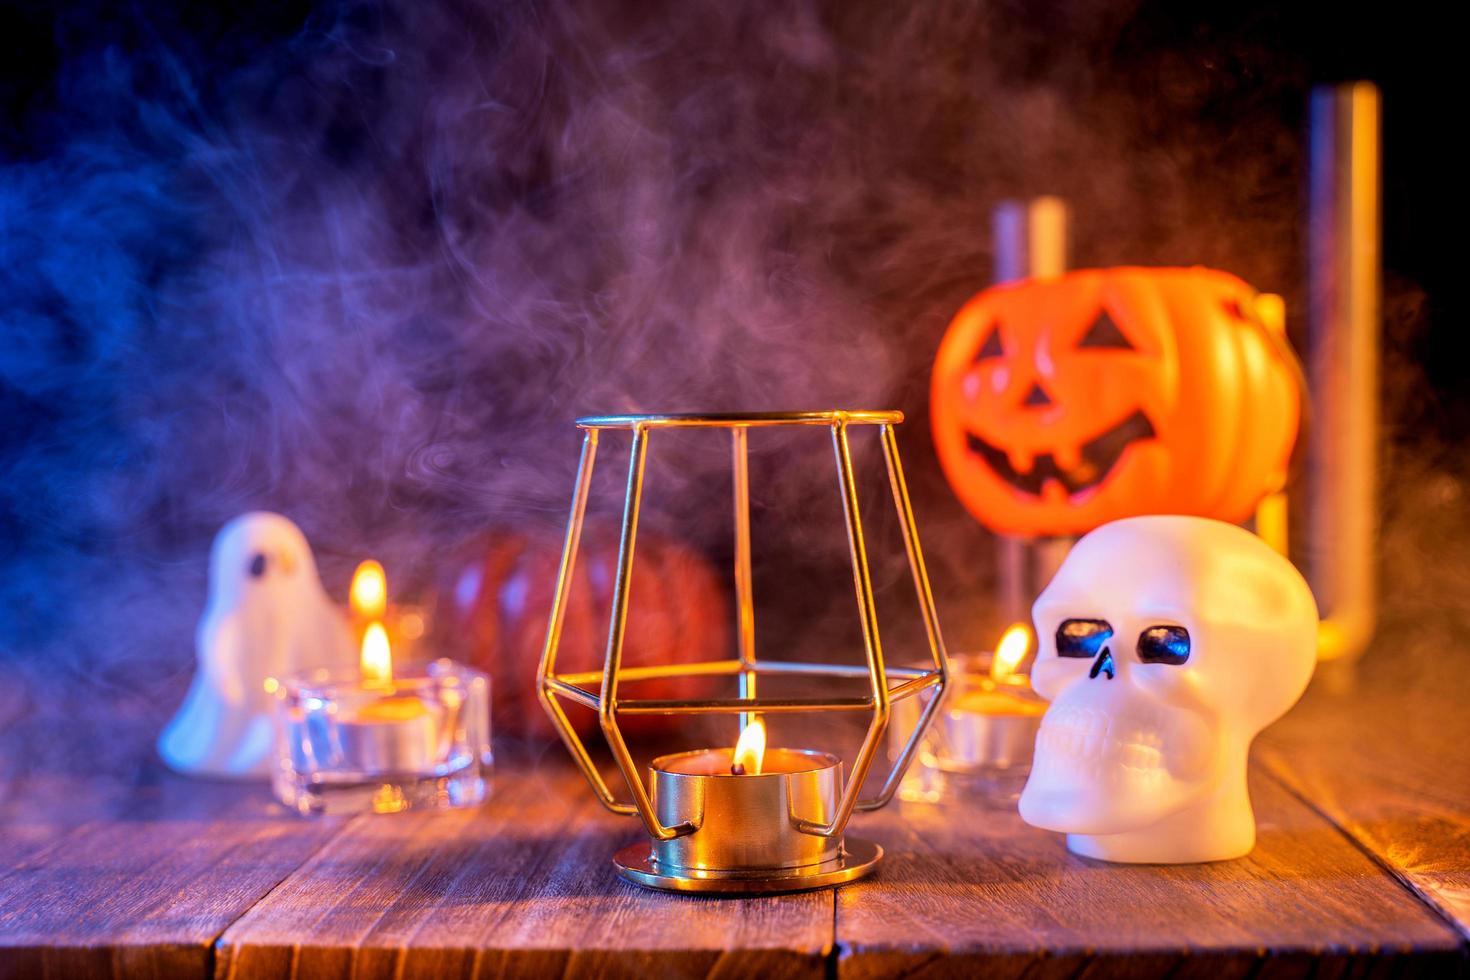 concetto di halloween, lanterna di zucca arancione e candele su un tavolo di legno scuro con fumo blu-arancio sullo sfondo, dolcetto o scherzetto, primo piano foto